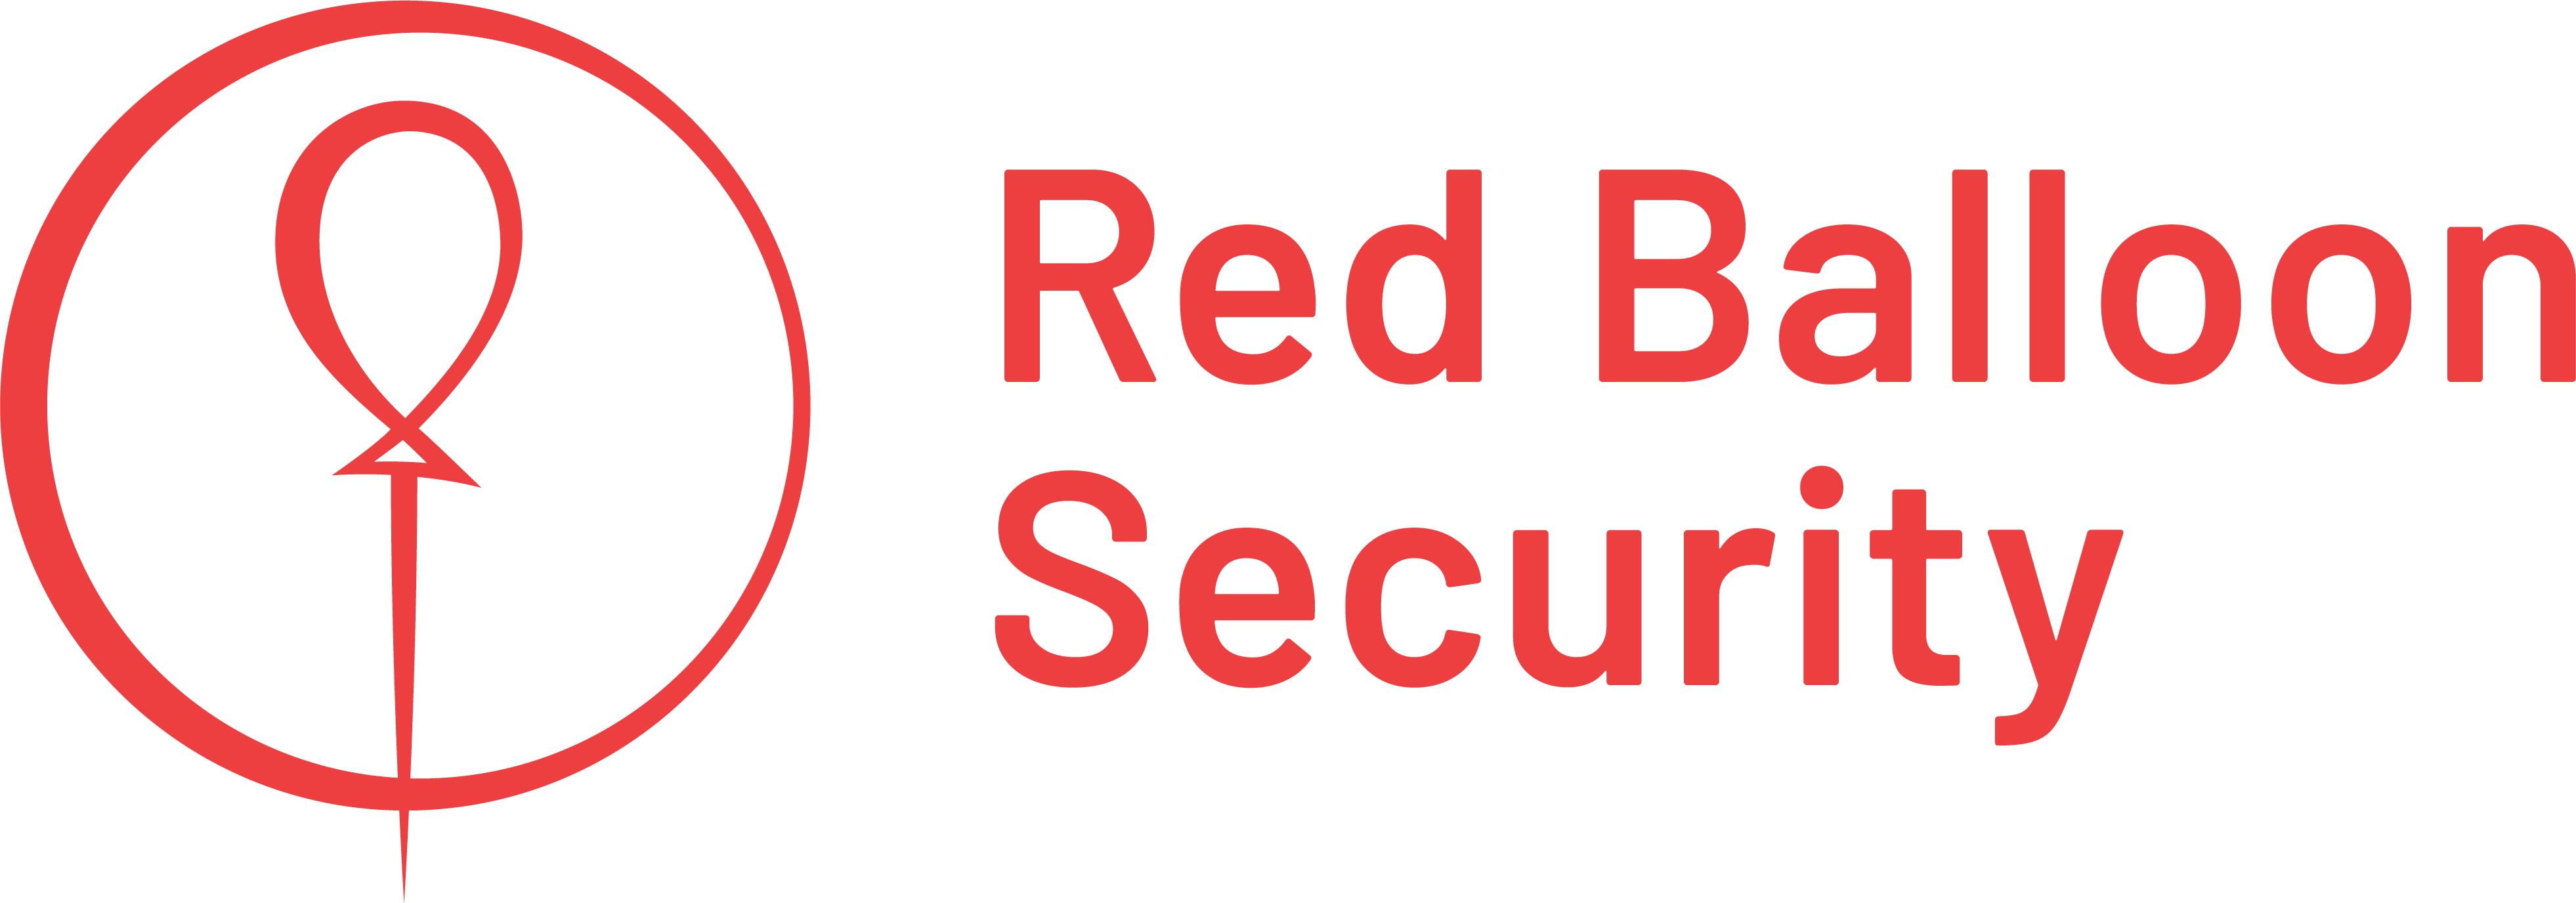 Red Balloon Security Logo